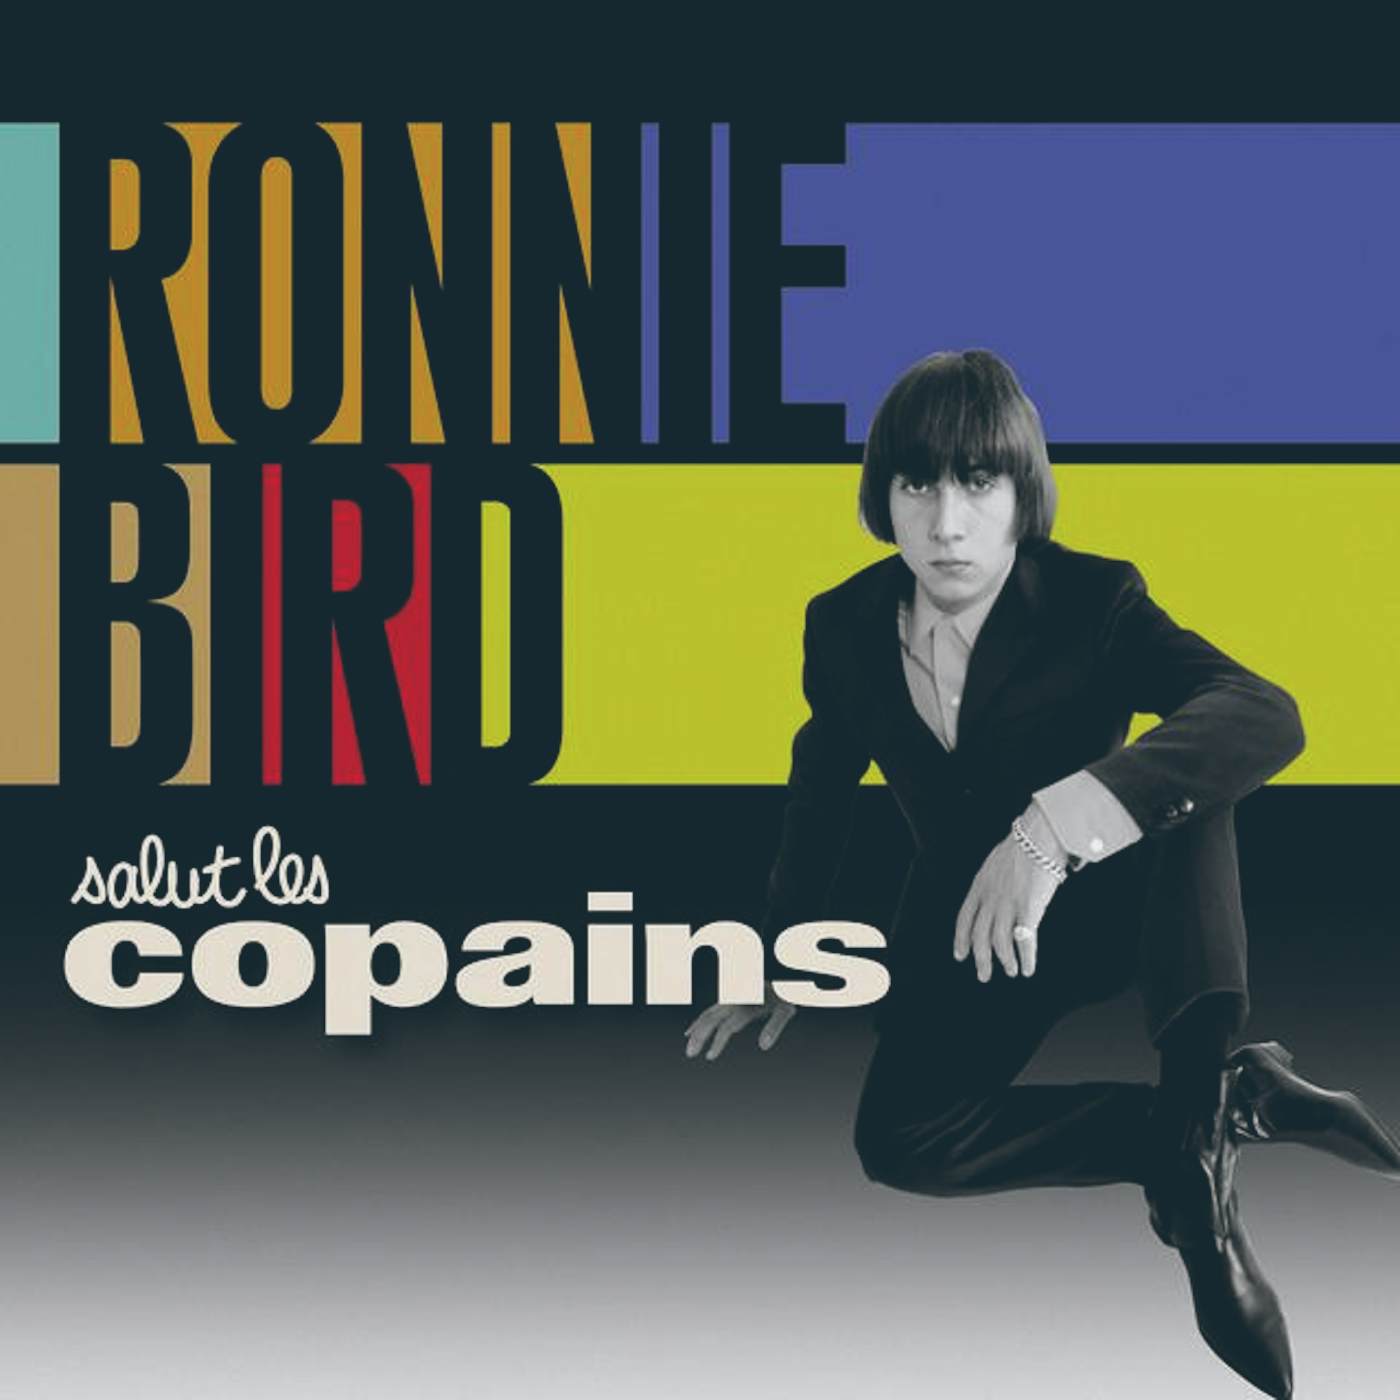 Ronnie Bird